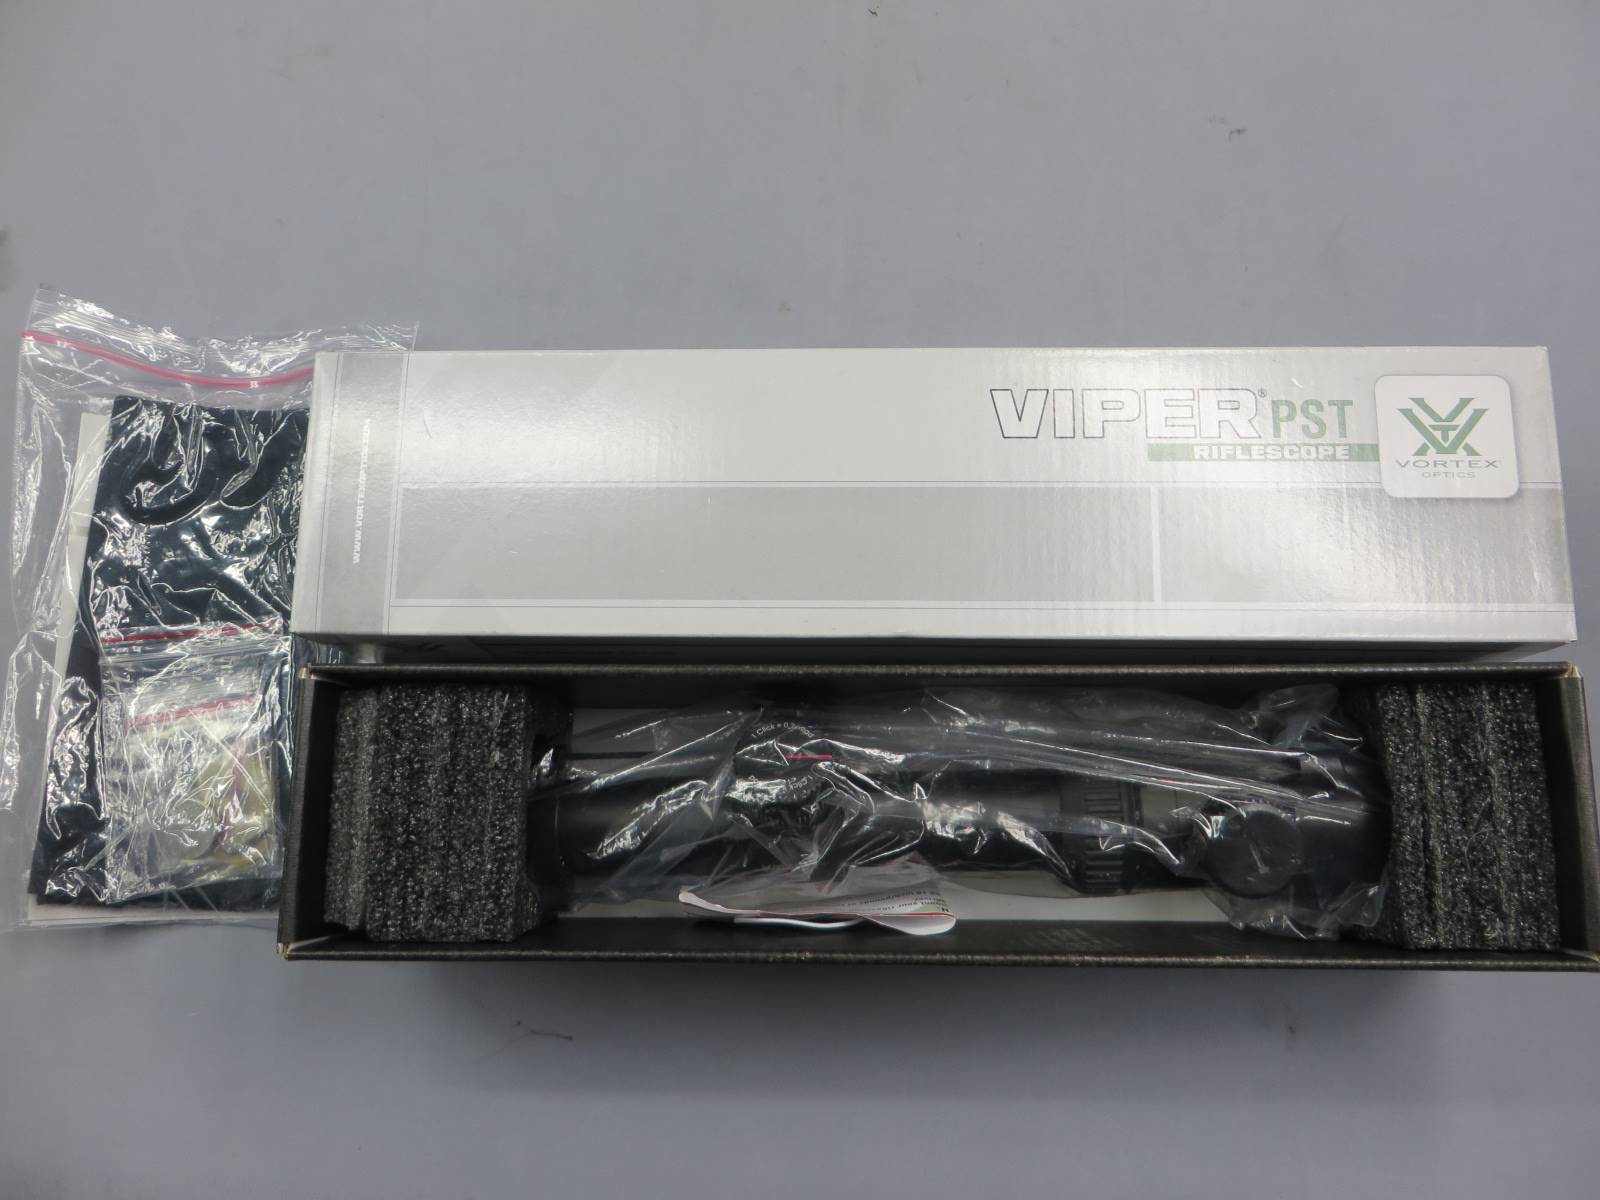 【VORTEX】VIPER PST PST-14ST-M 1-4×24TMCQ